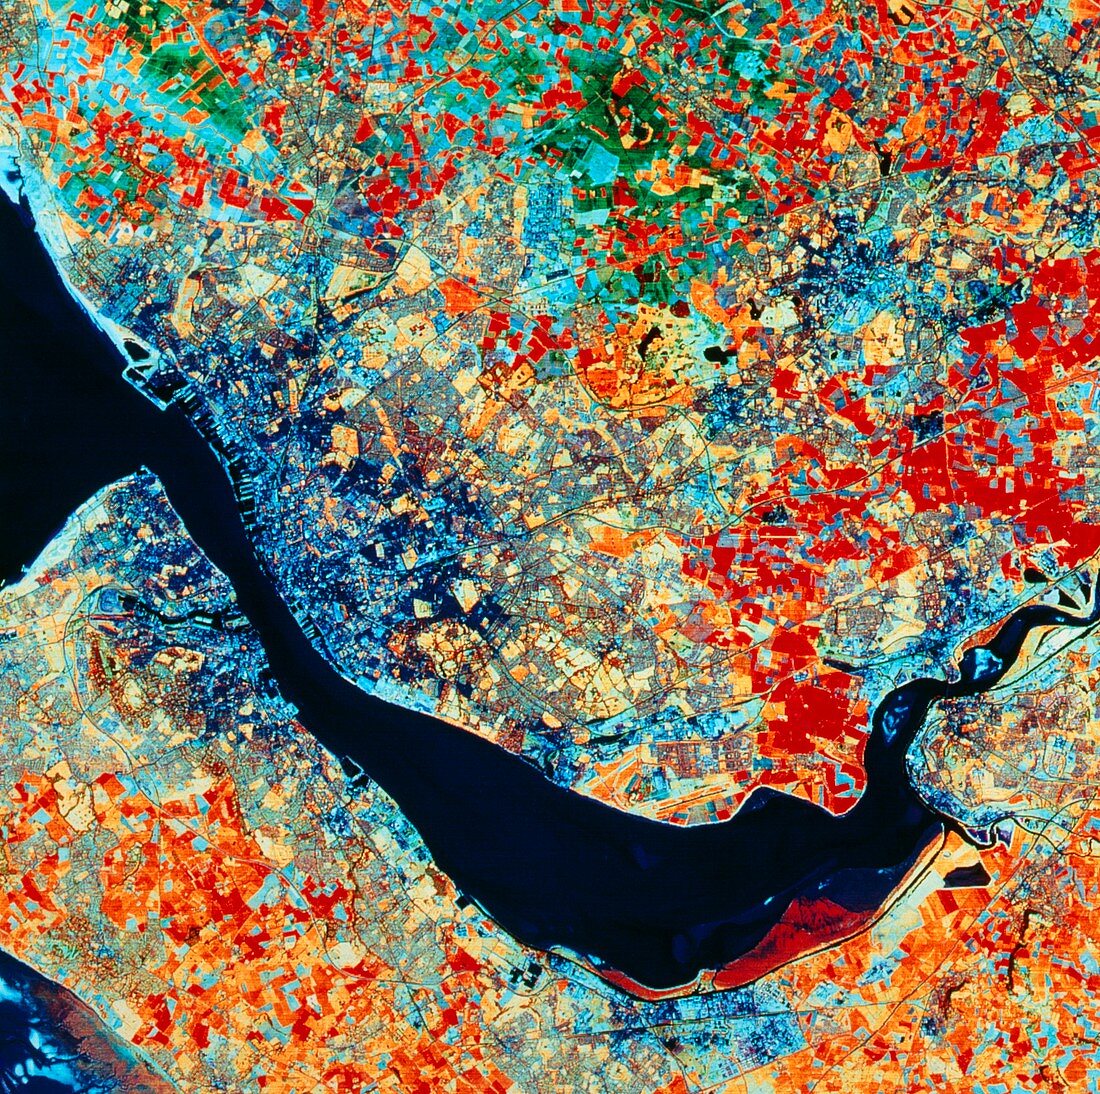 Landsat TM image of Liverpool,England